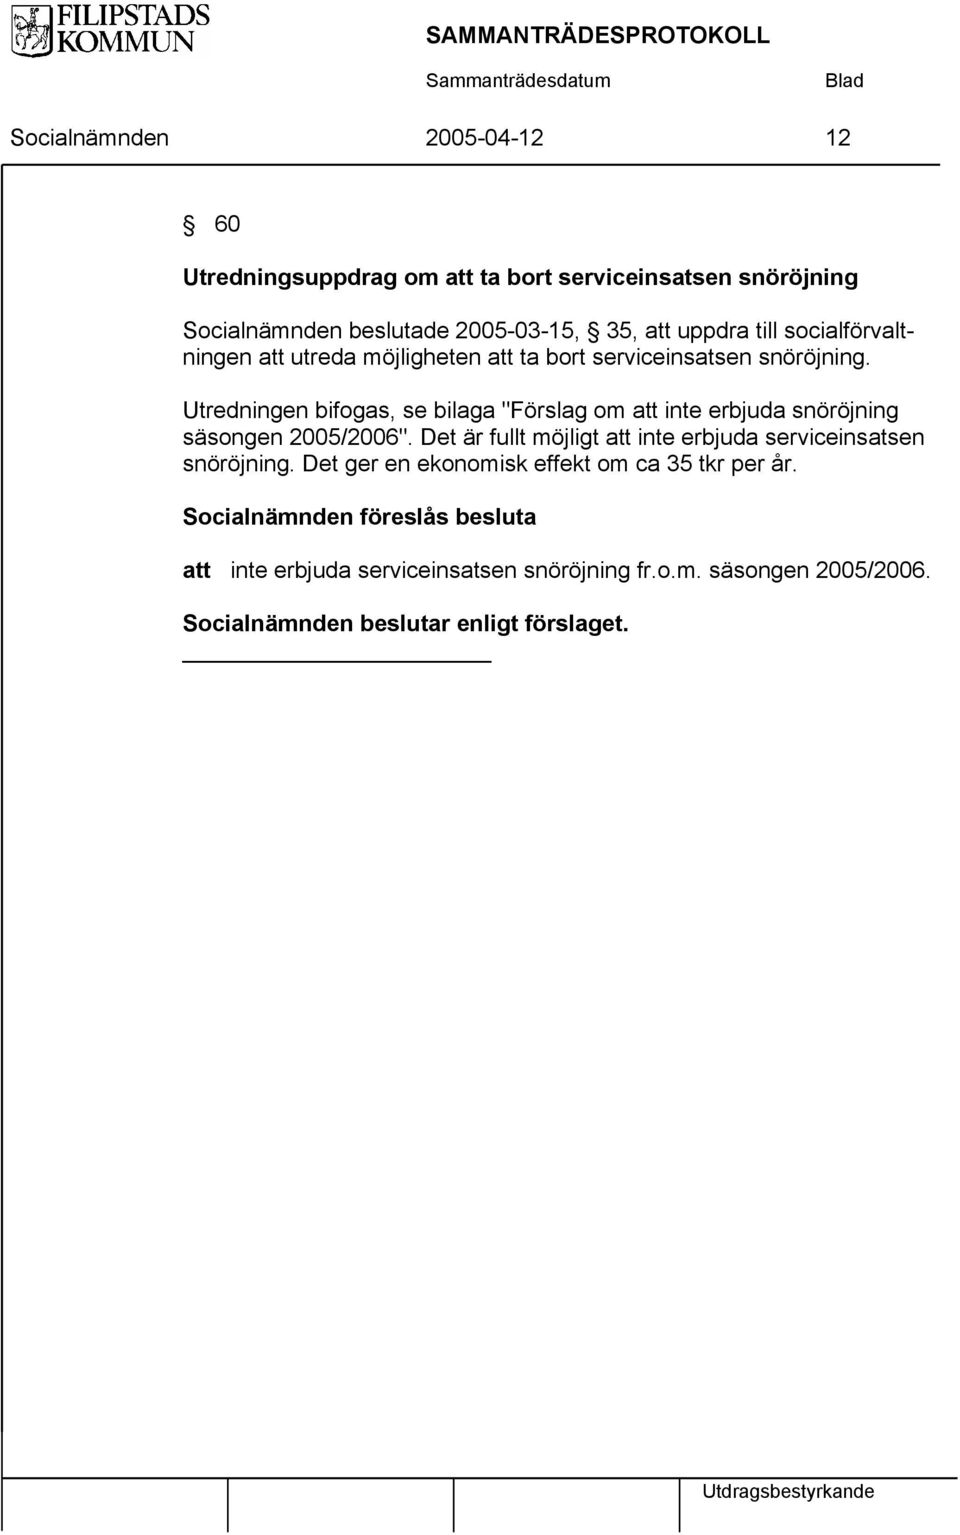 Utredningen bifogas, se bilaga "Förslag om att inte erbjuda snöröjning säsongen 2005/2006".